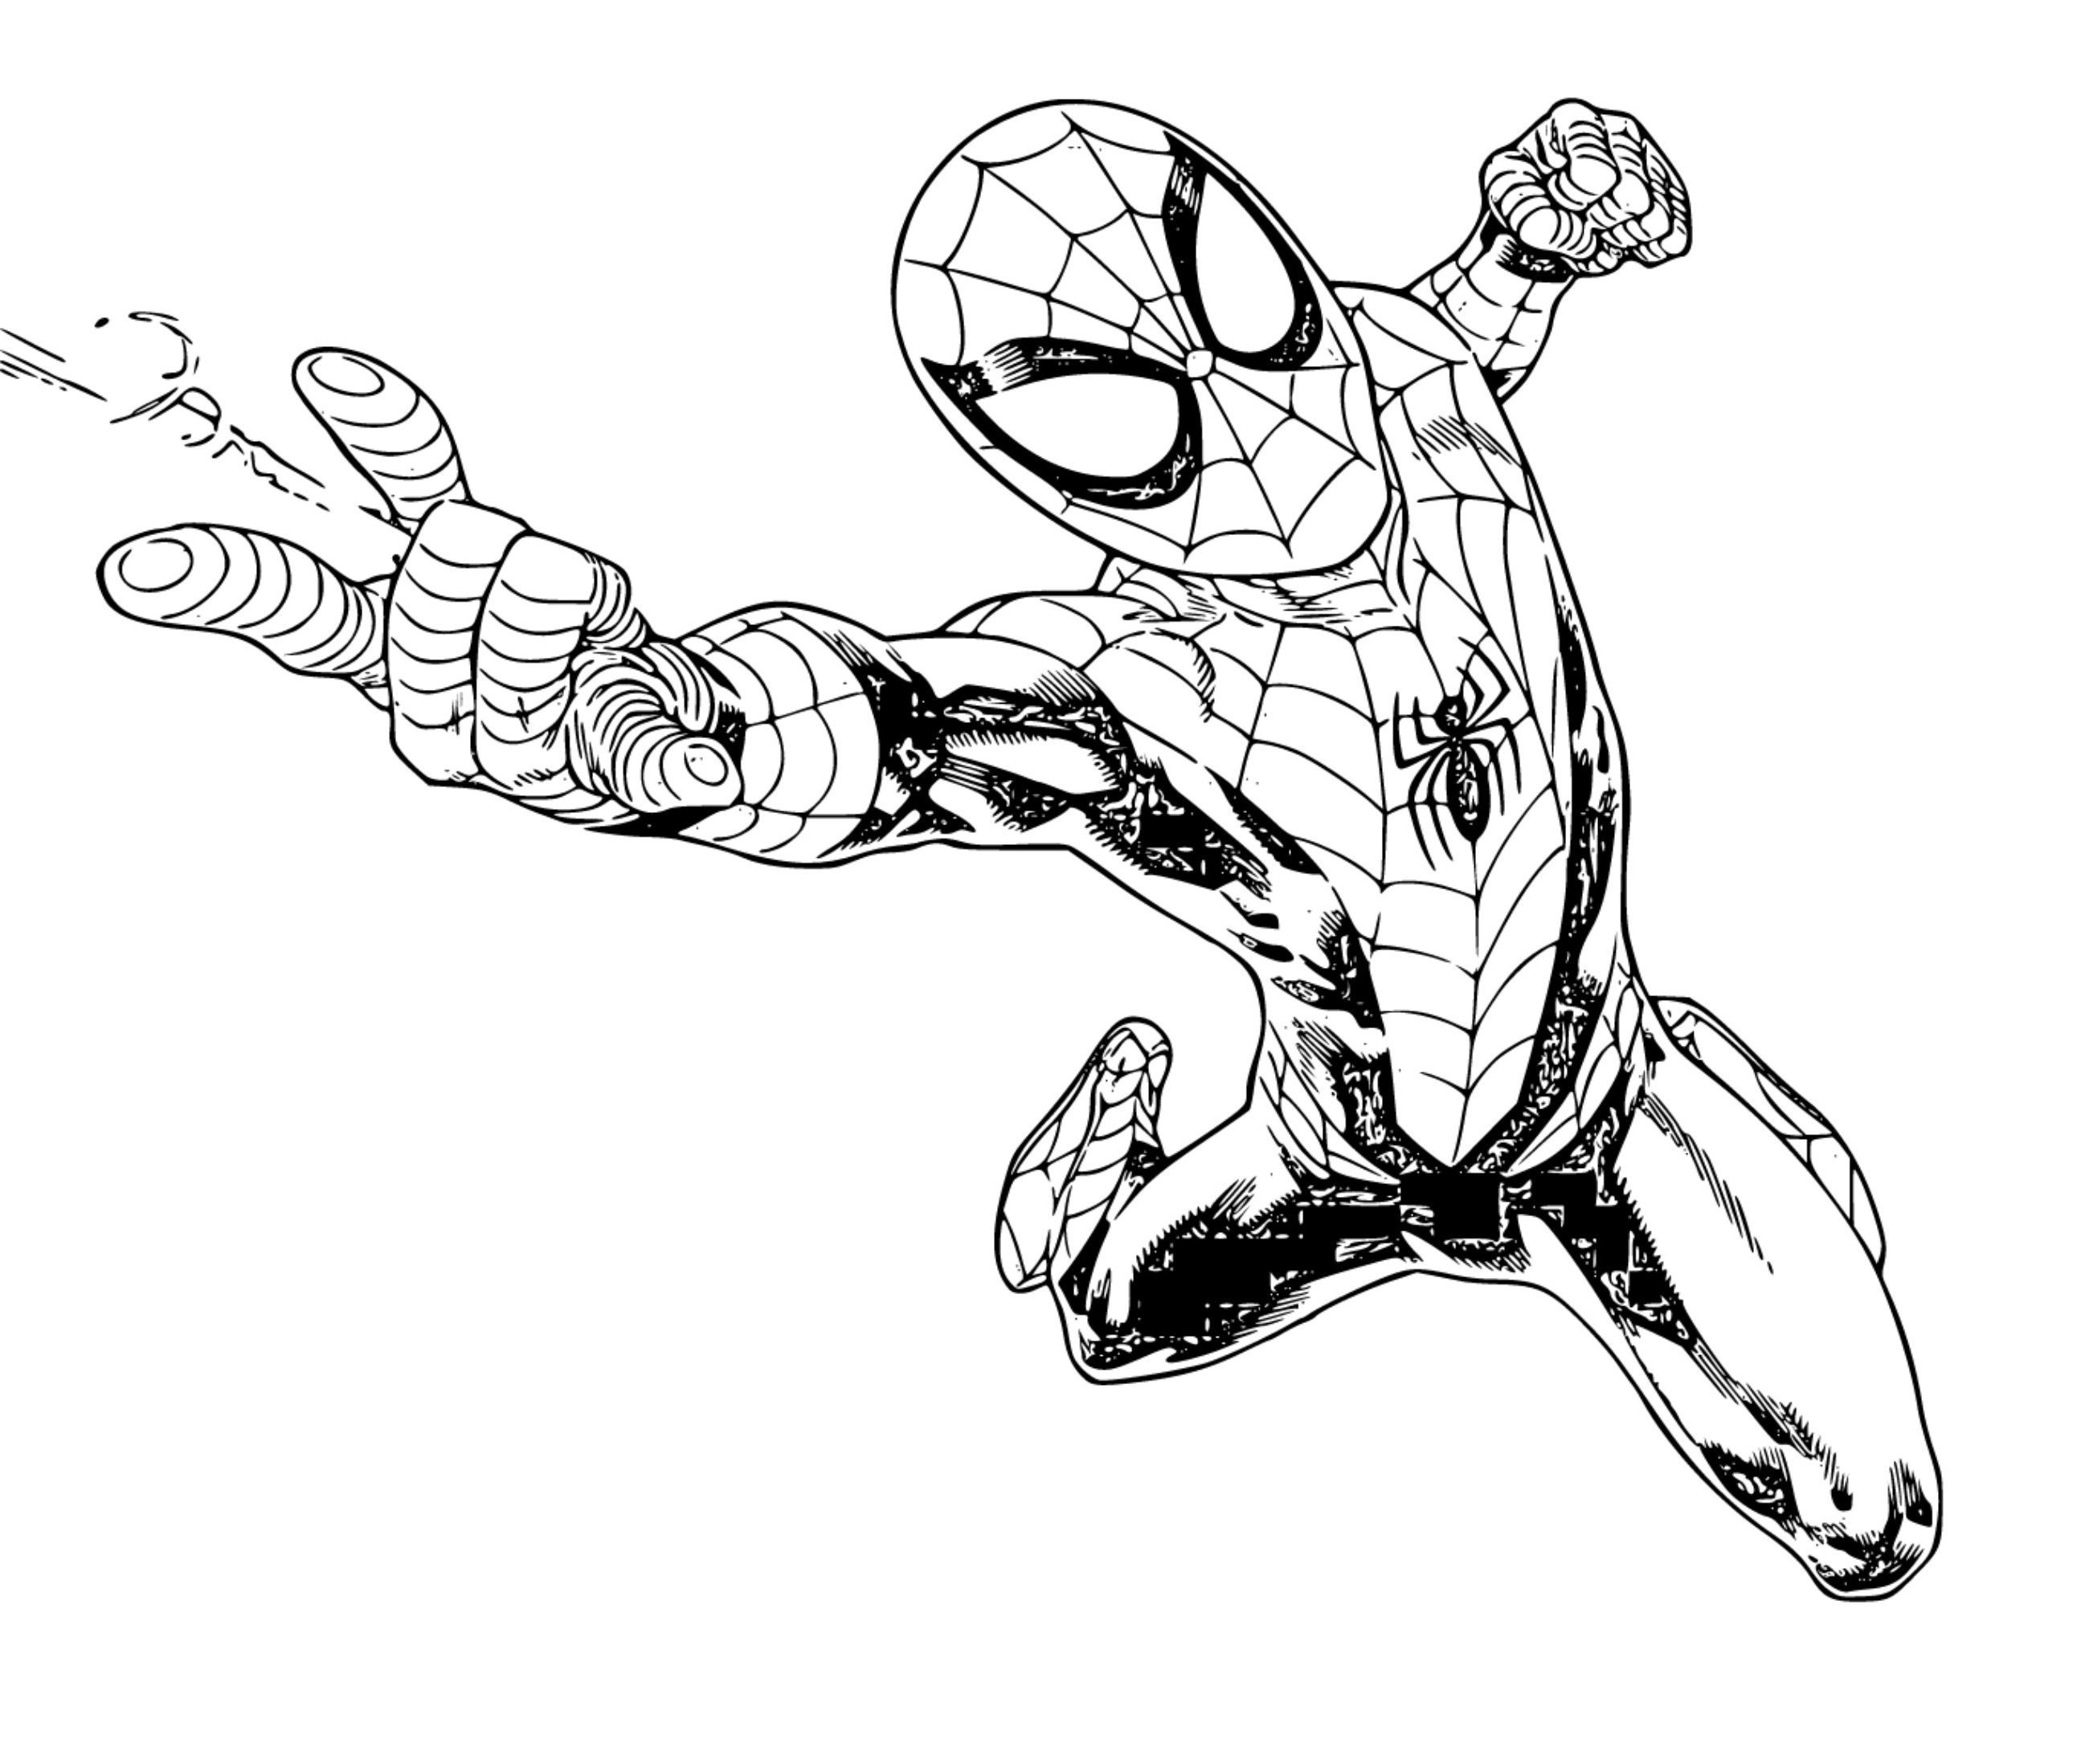 SpiderMan Coloring Page 17 - SheetalColor.com